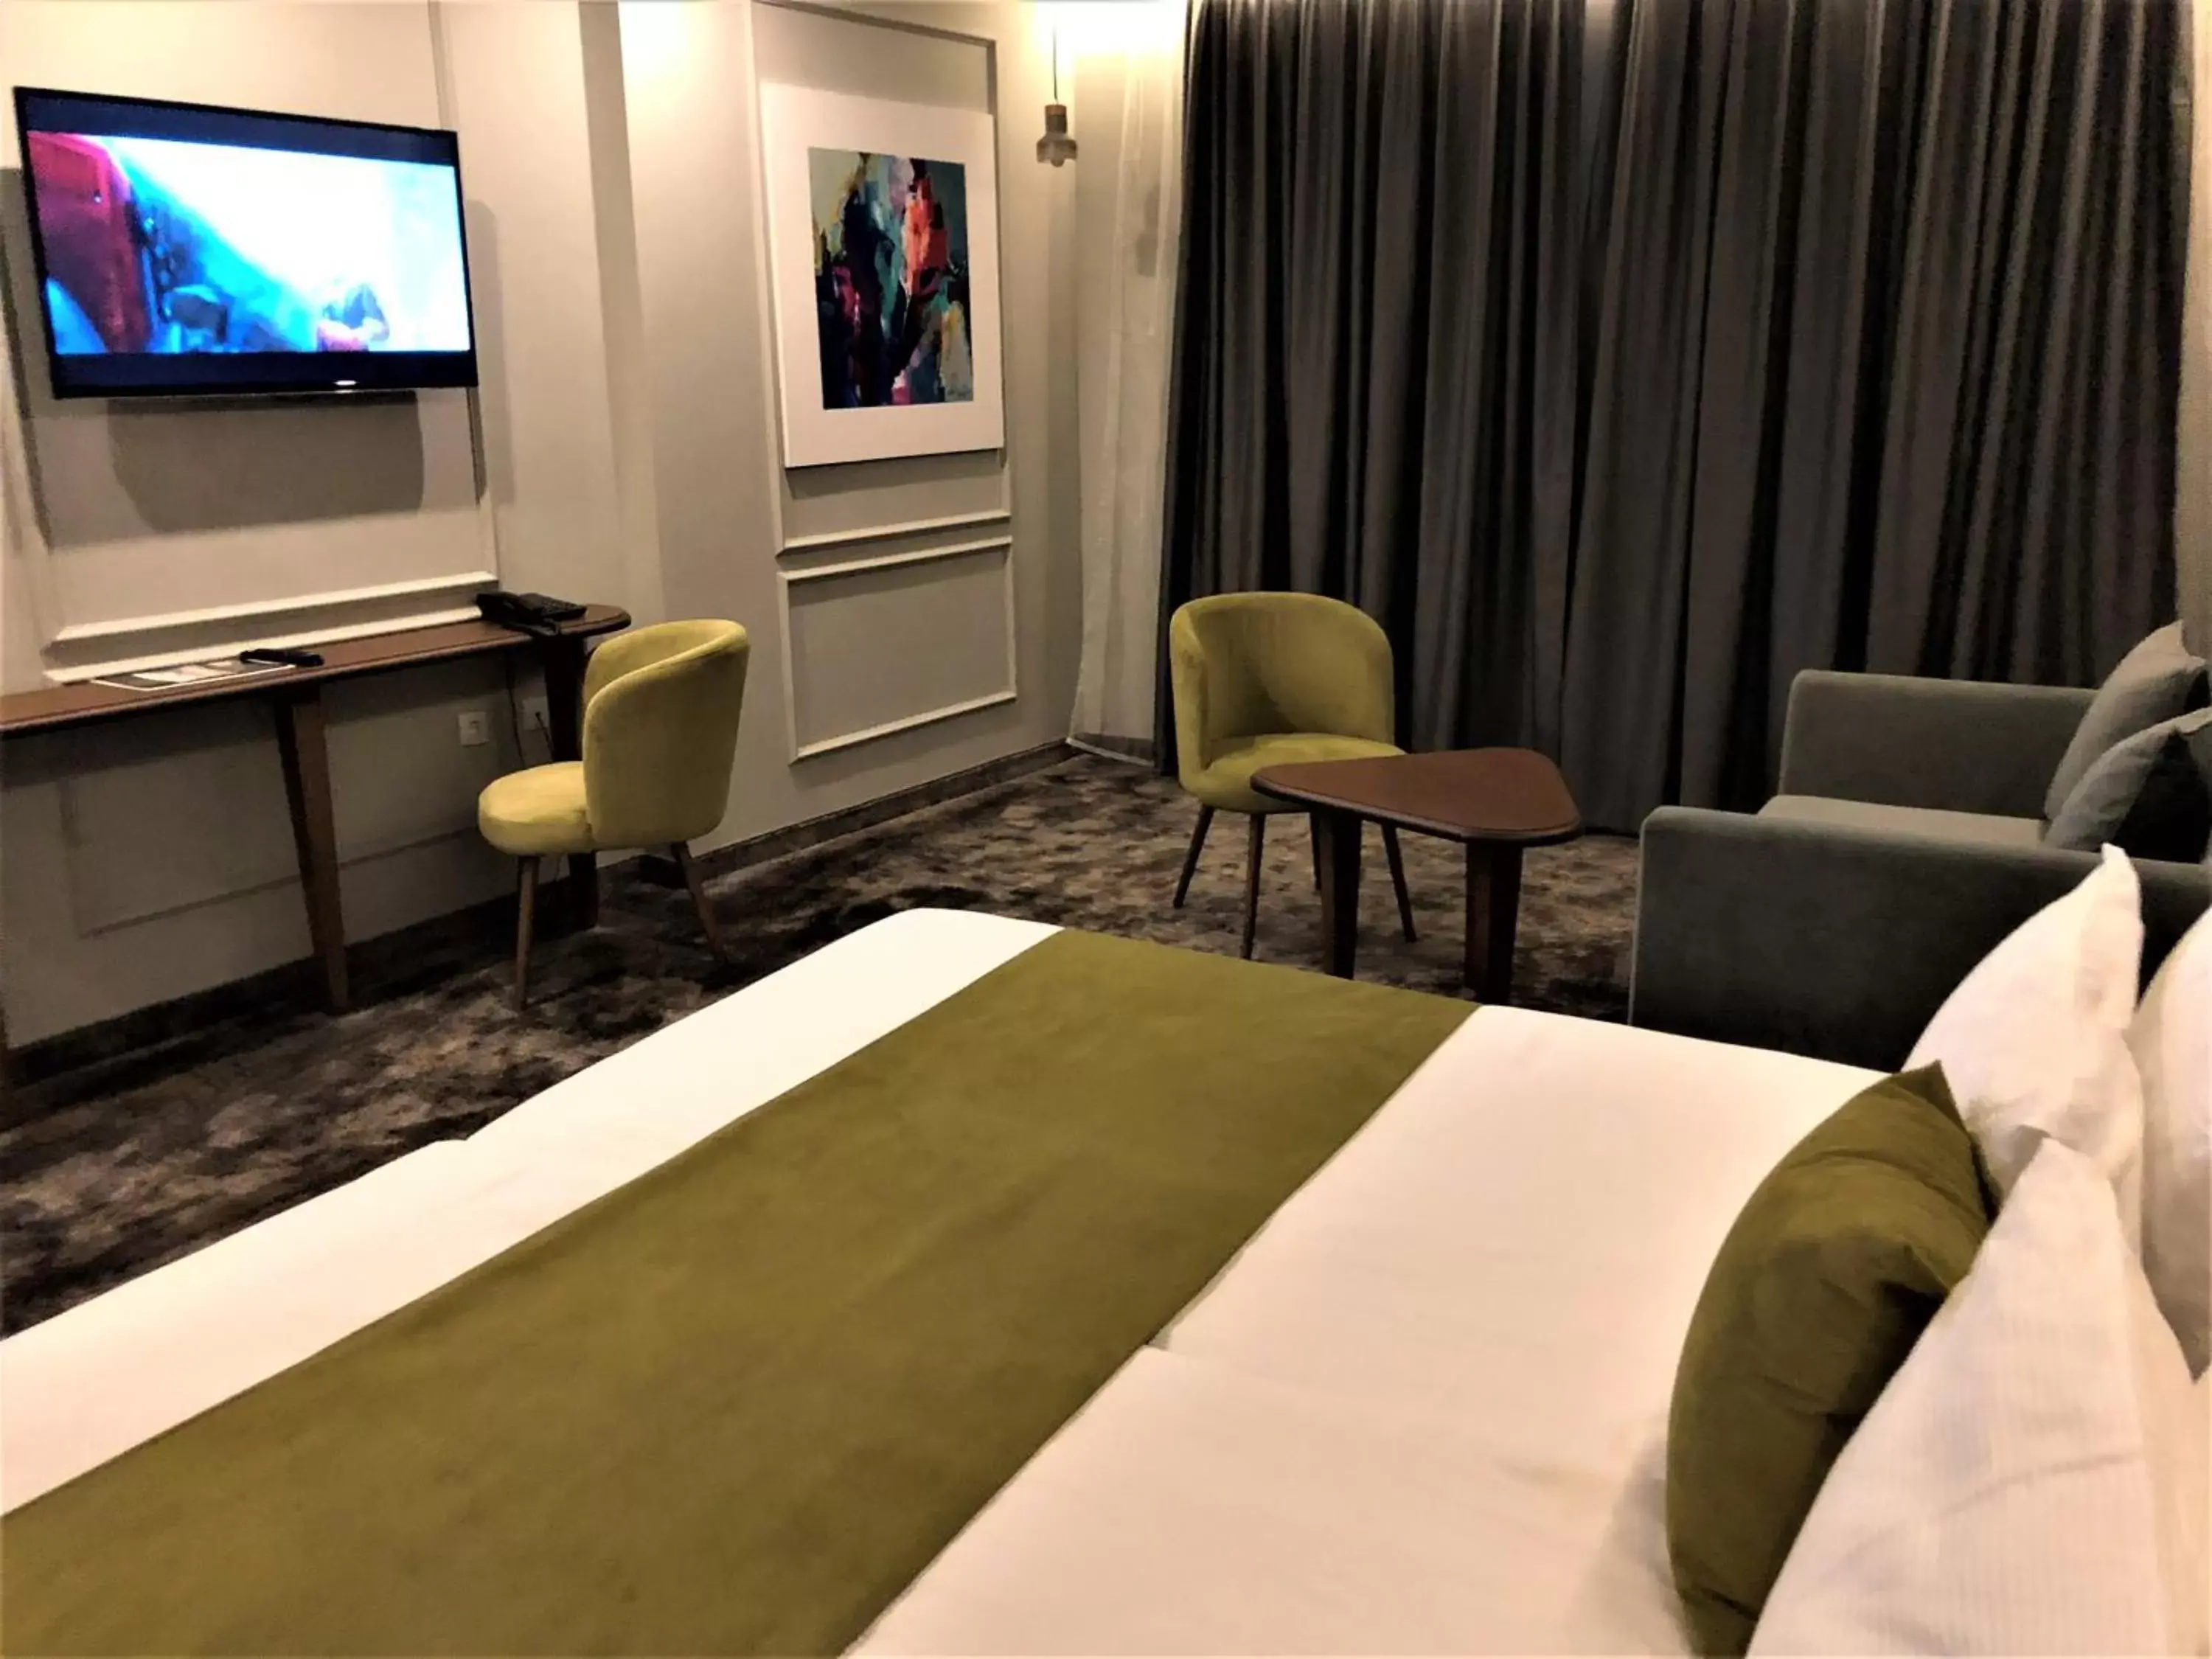 Bedroom, TV/Entertainment Center in Medite Spa Resort and Villas